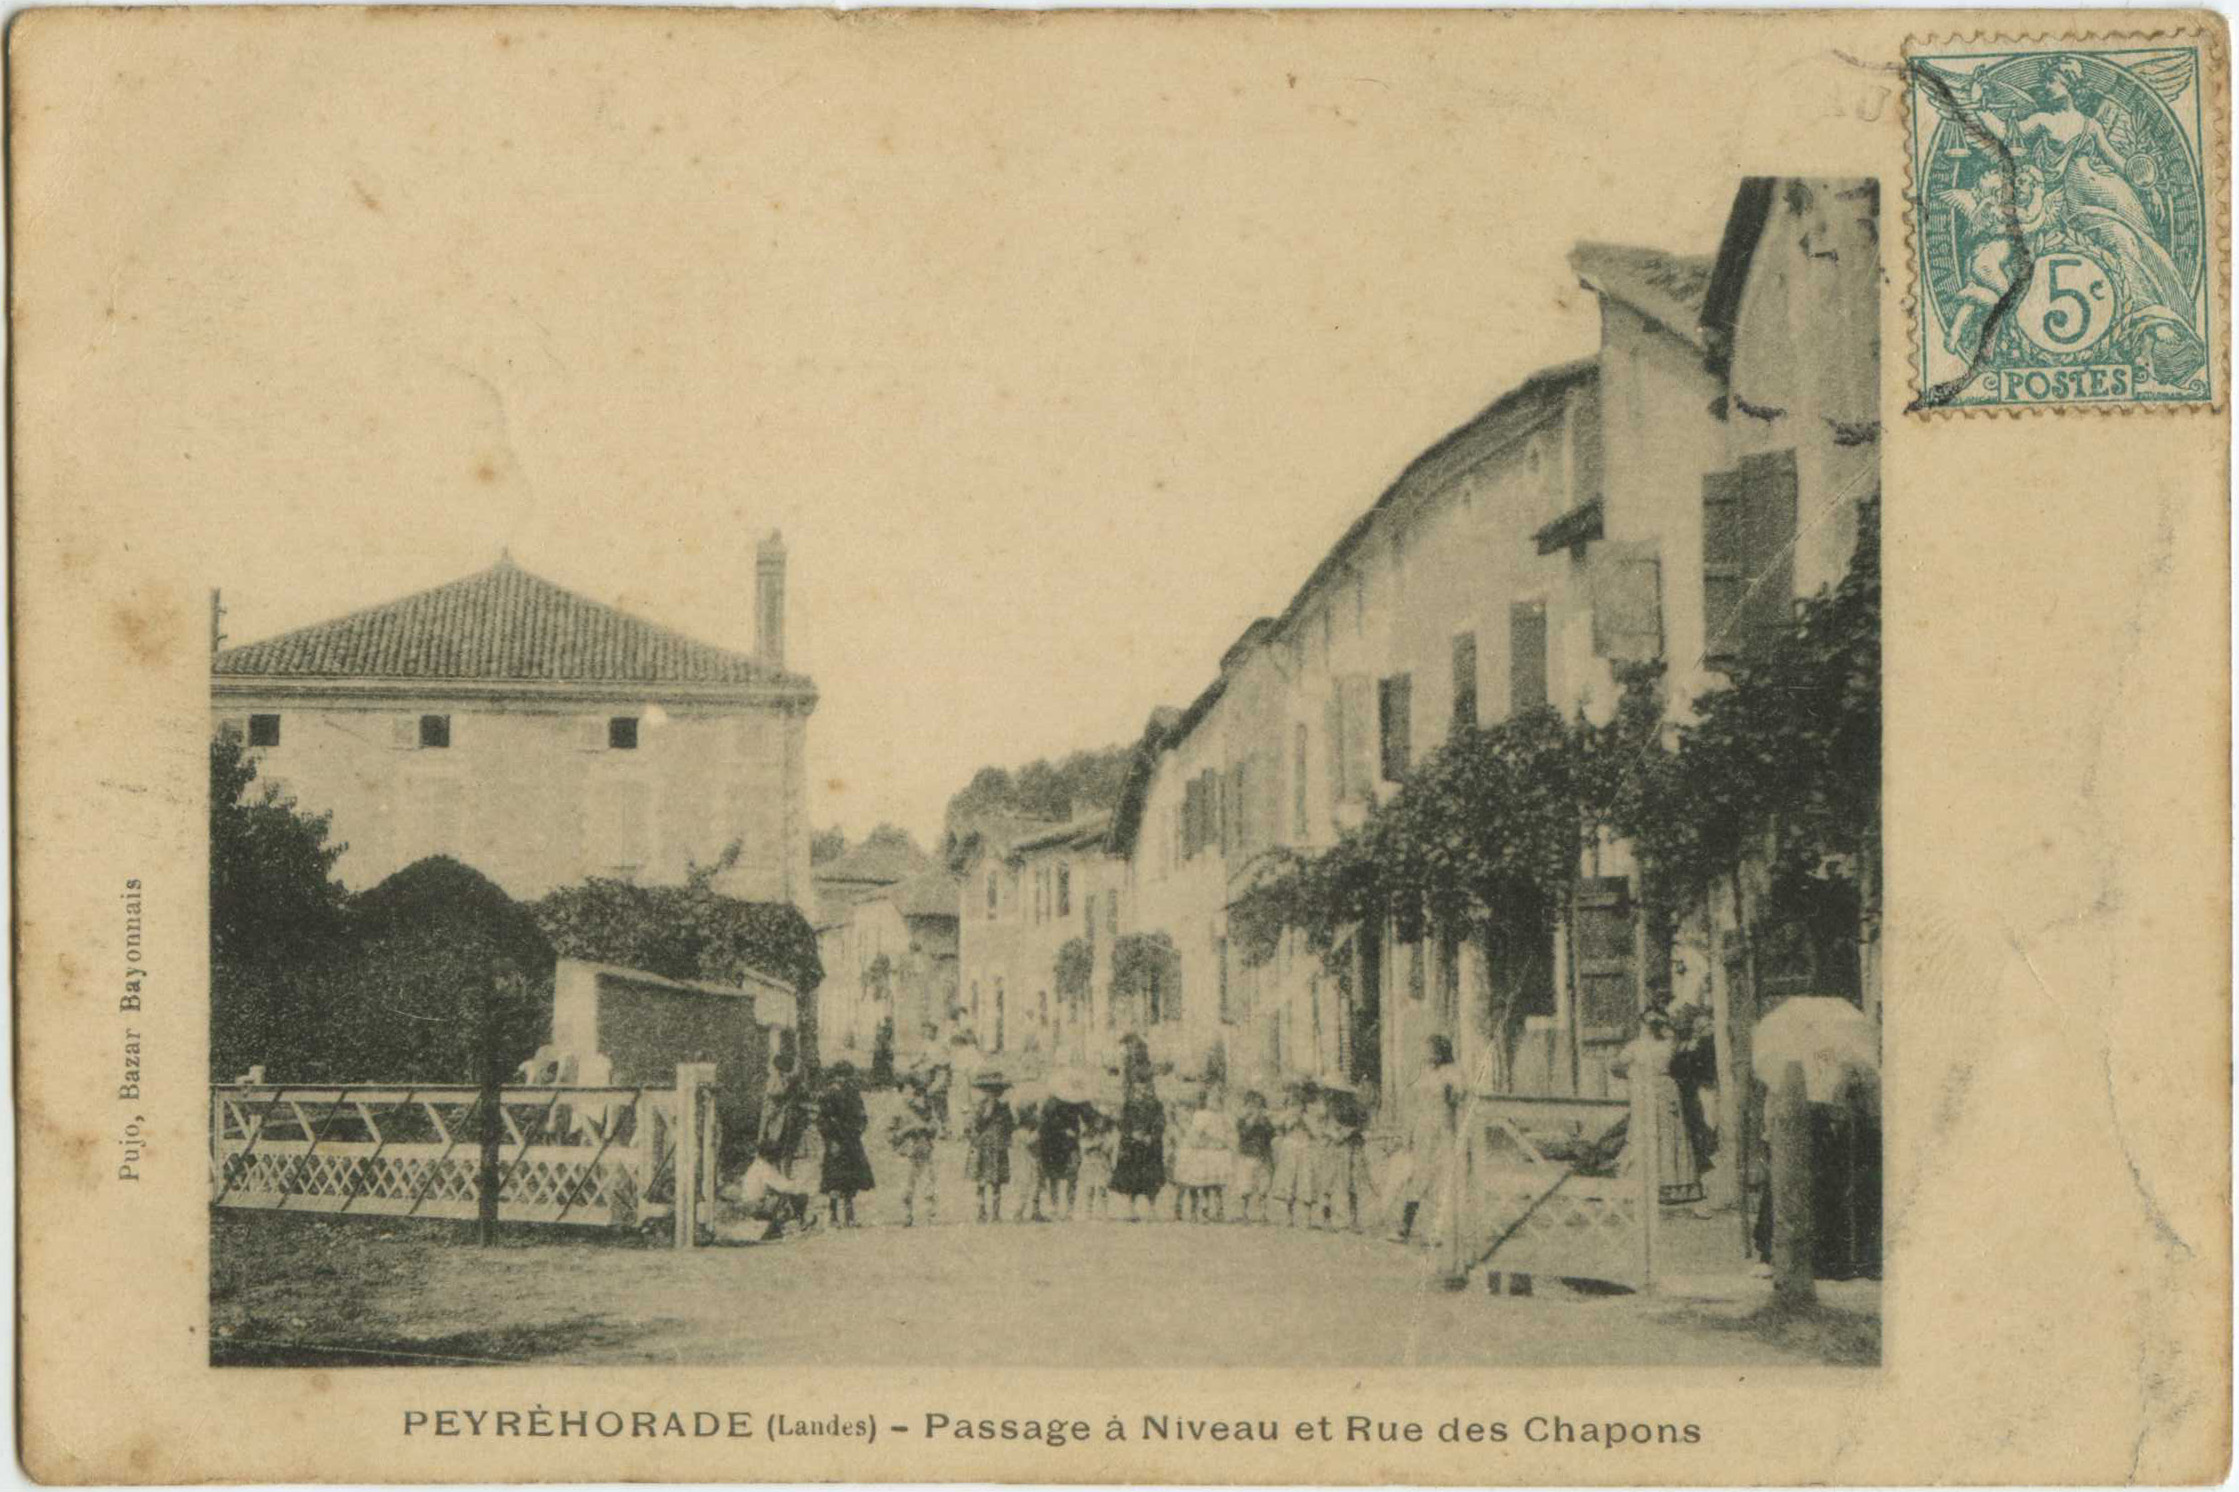 Peyrehorade - Passage à Niveau et Rue des Chapons